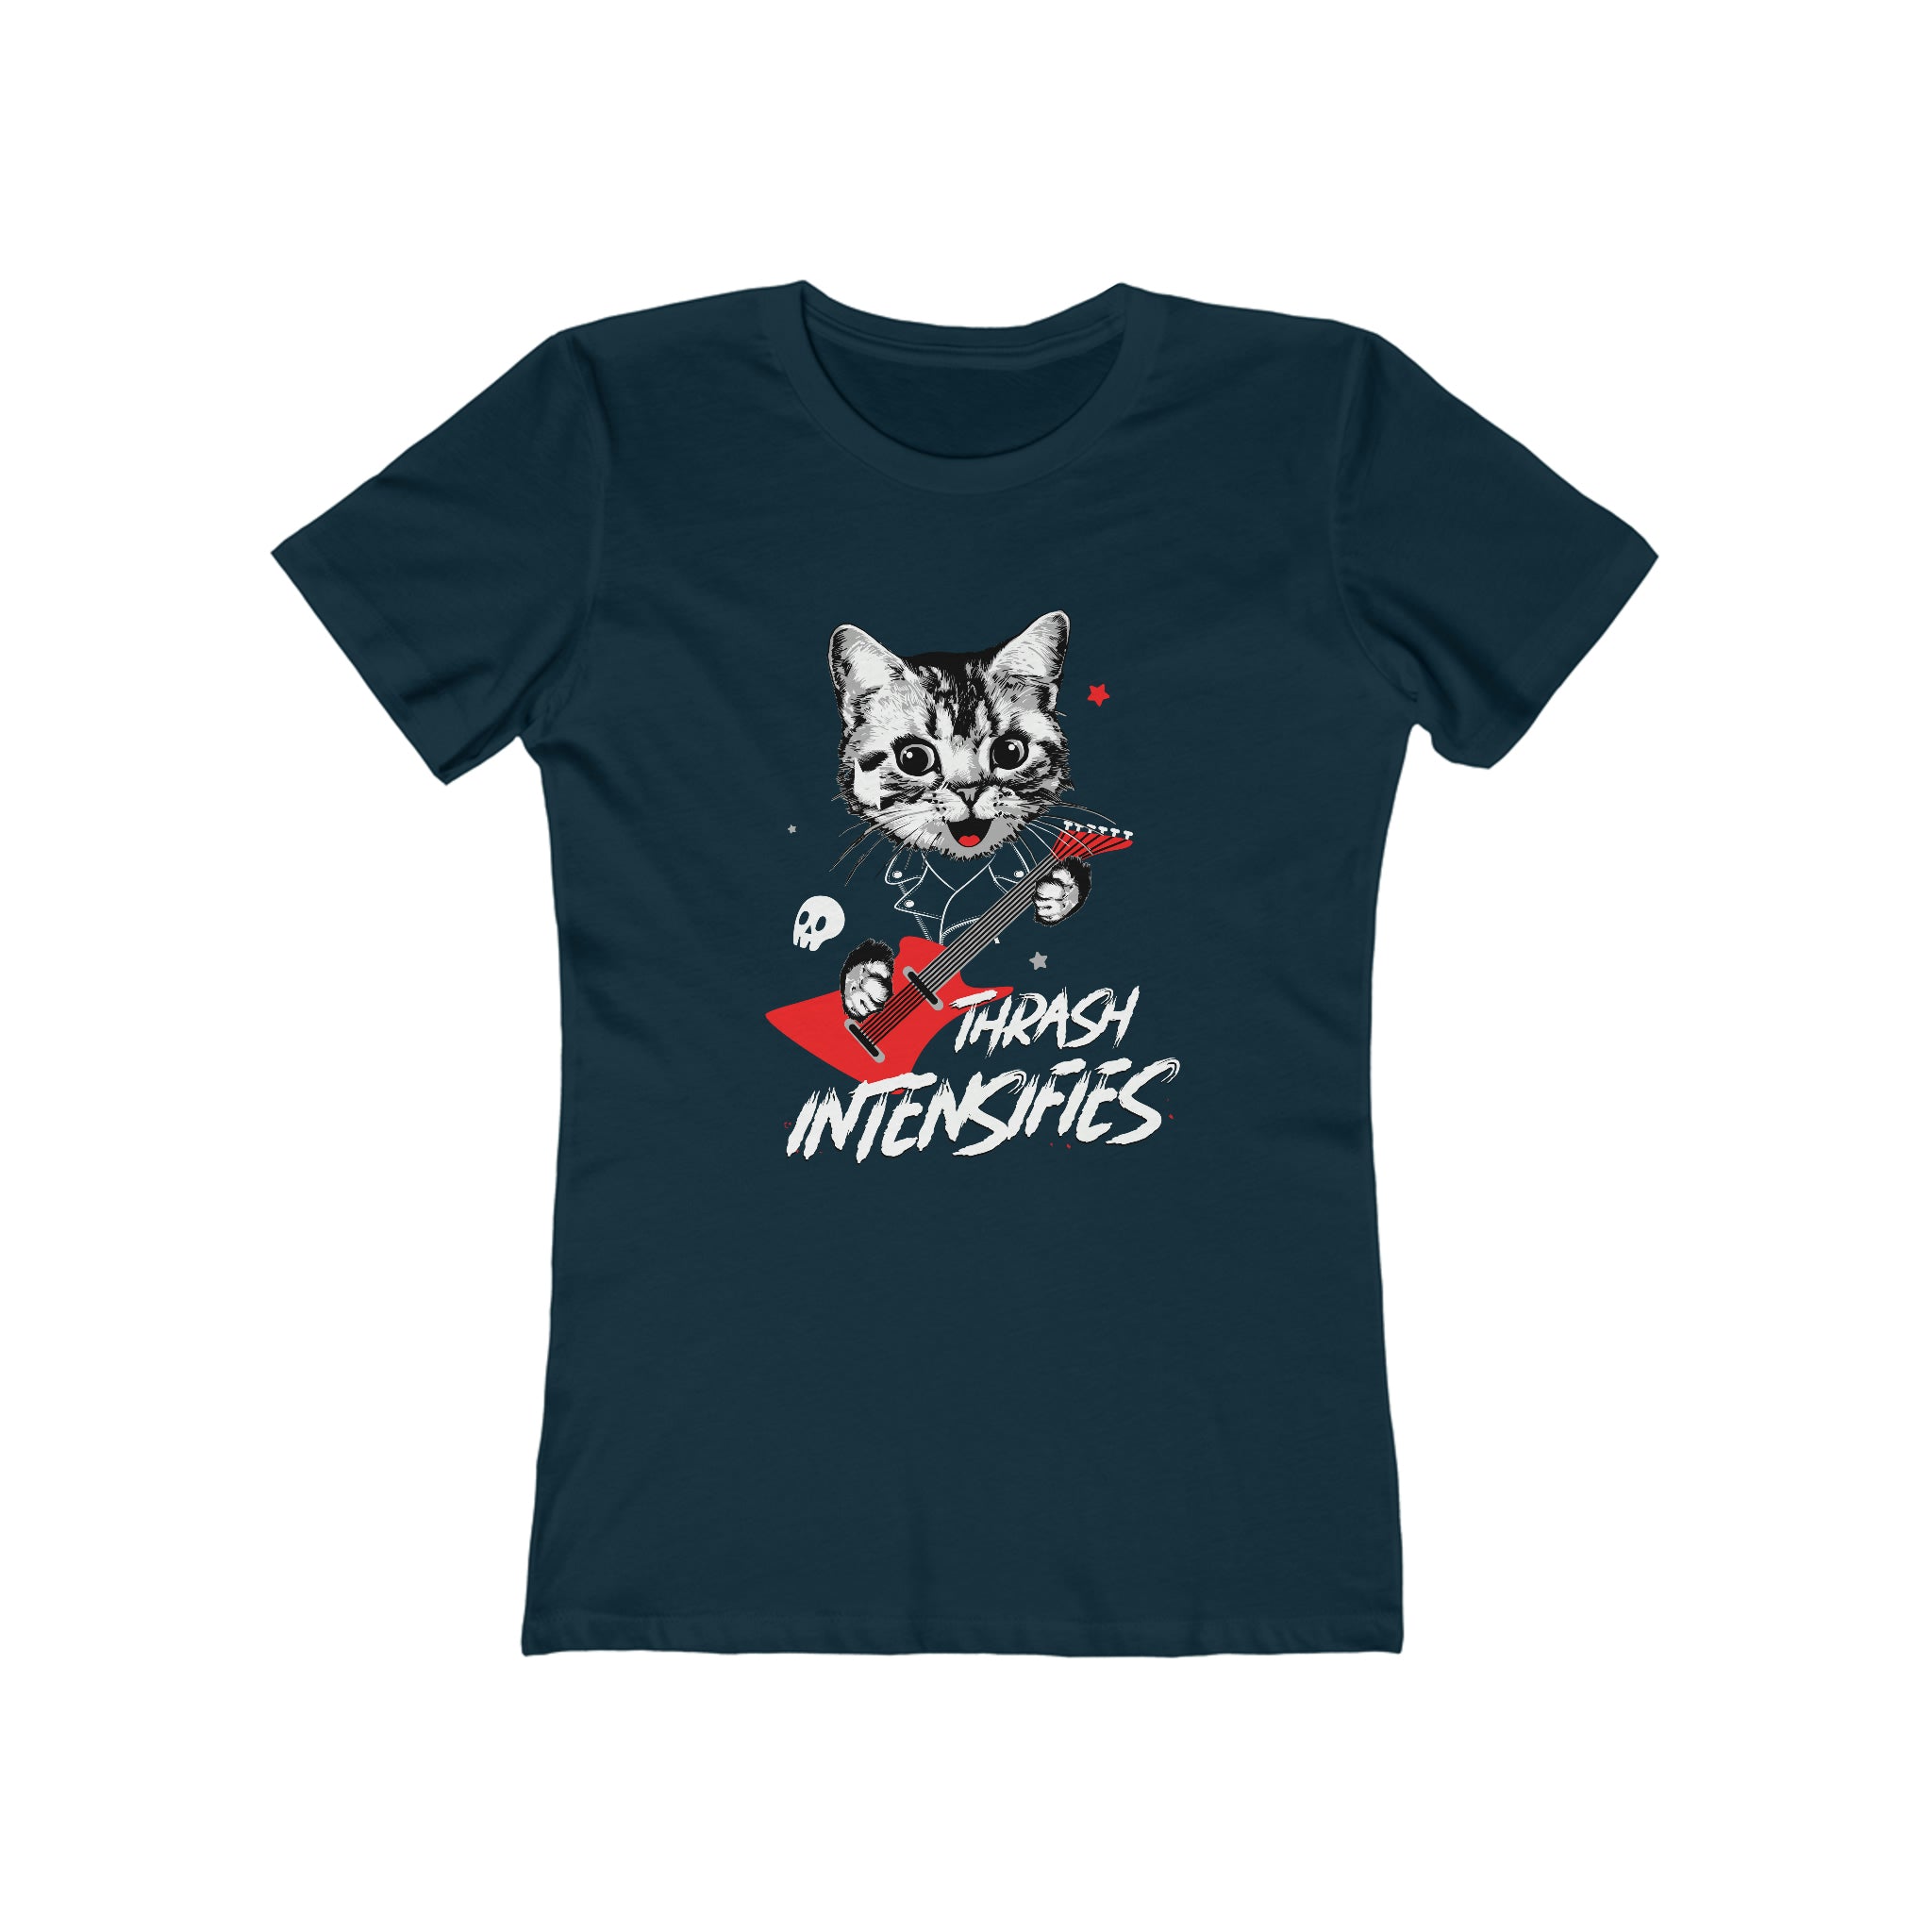 Thrash Intensifies : Women's 100% Cotton T-Shirt - A gentler design from our “pet cats” metal t-shirt line